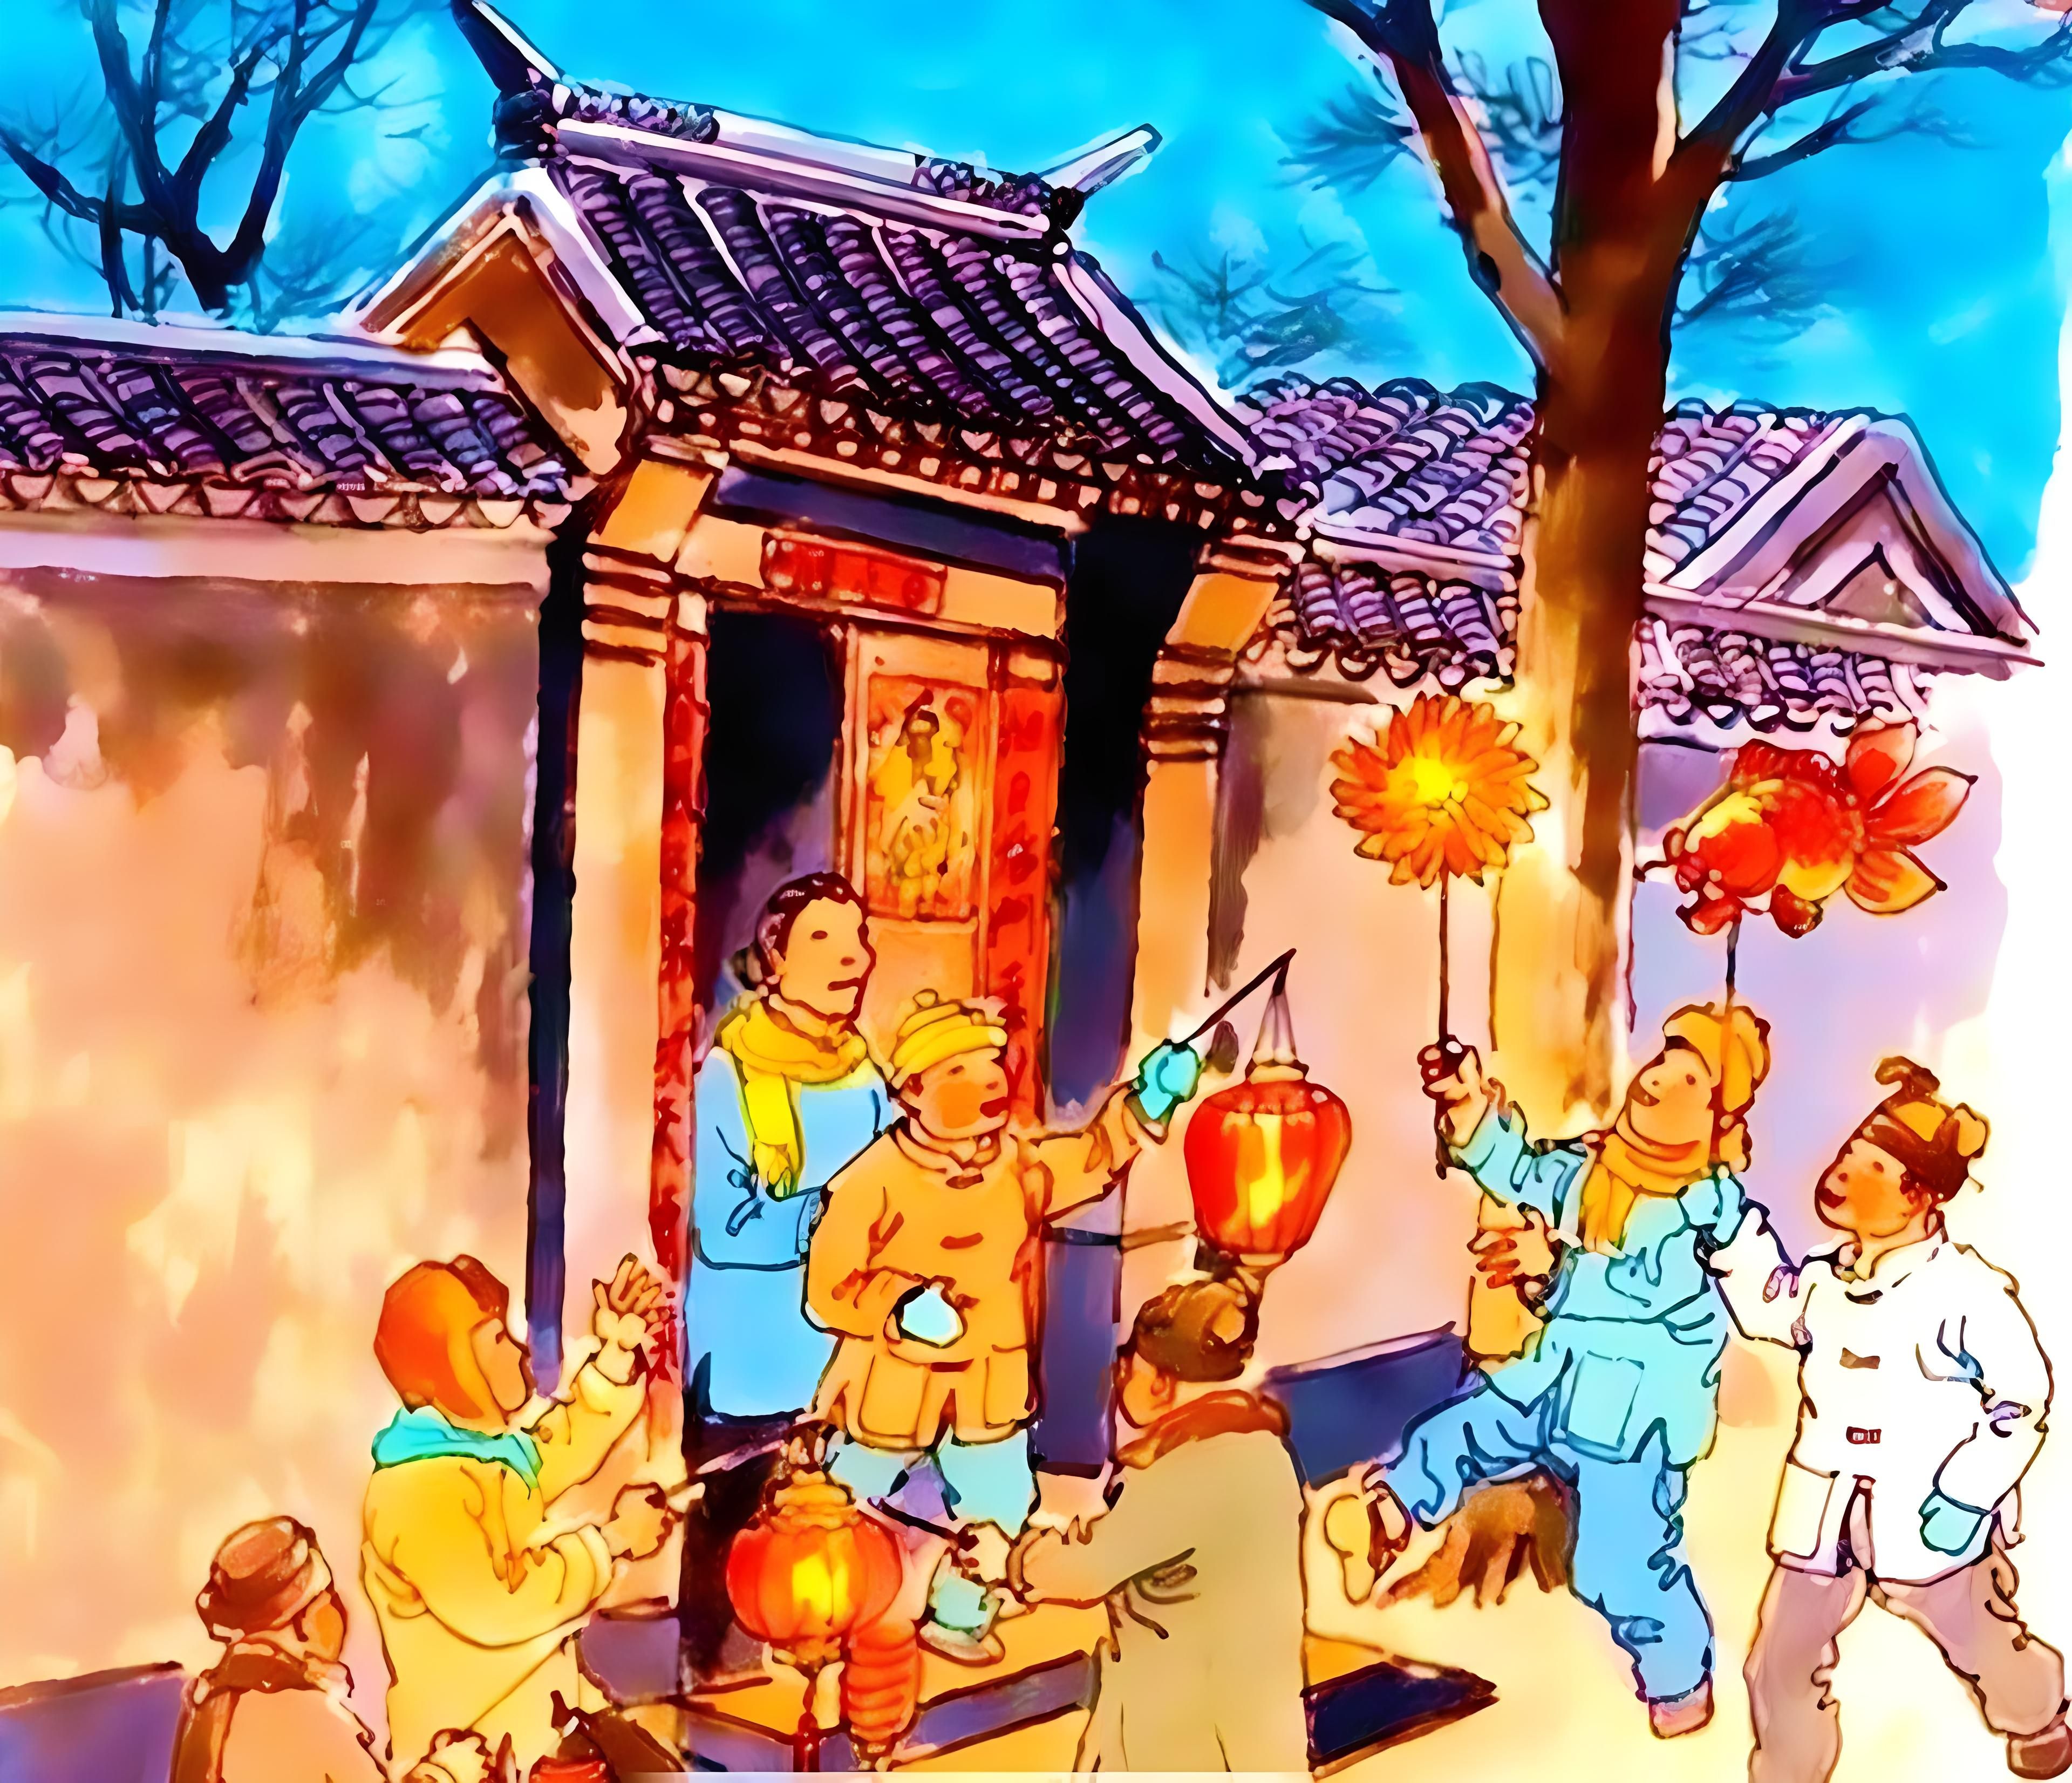 春节民俗大观：文化的瑰丽与传承